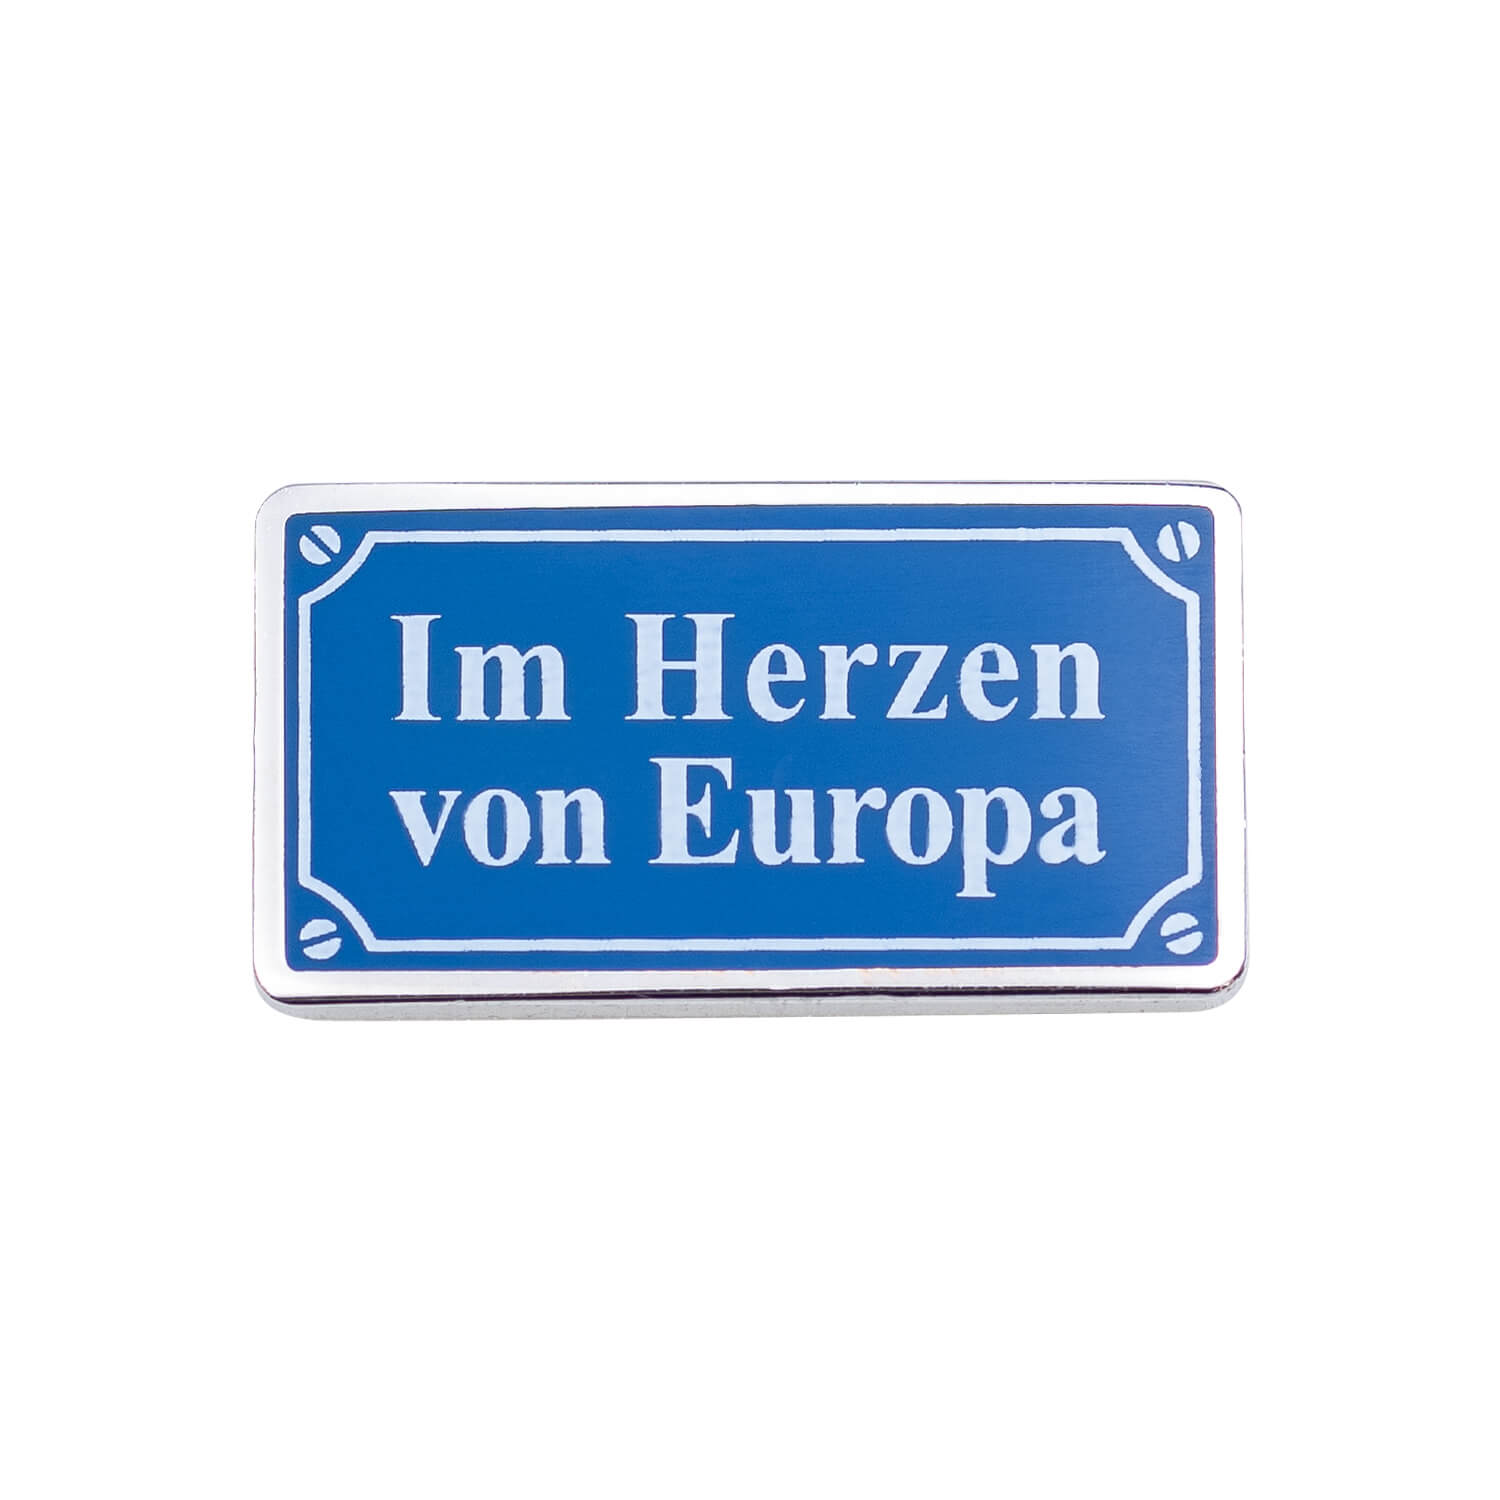 Bild 1: Pin Straßenschild Im Herzen von Europa